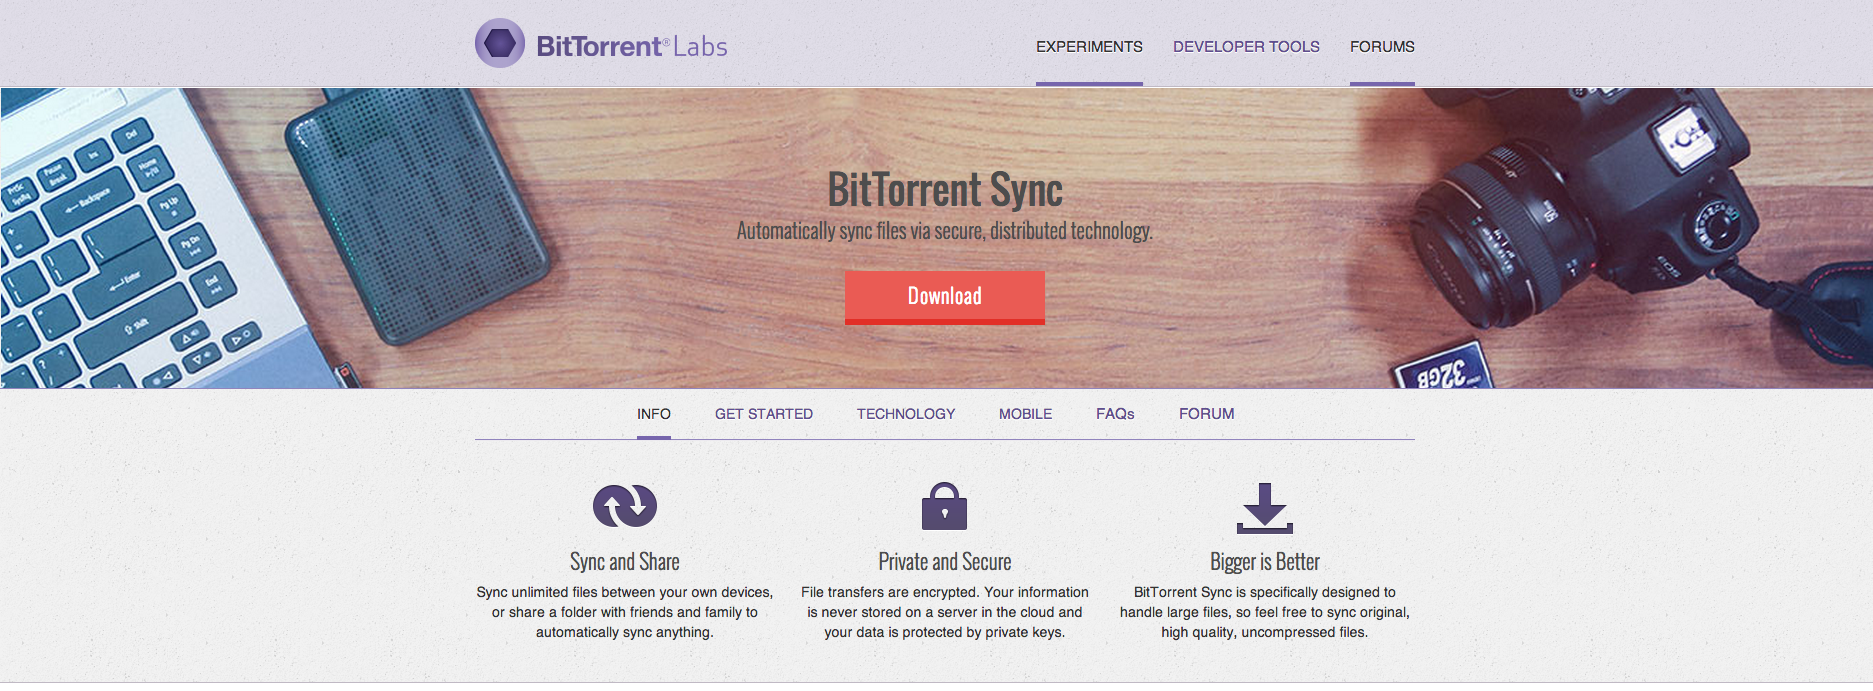 BitTorrent Sync site